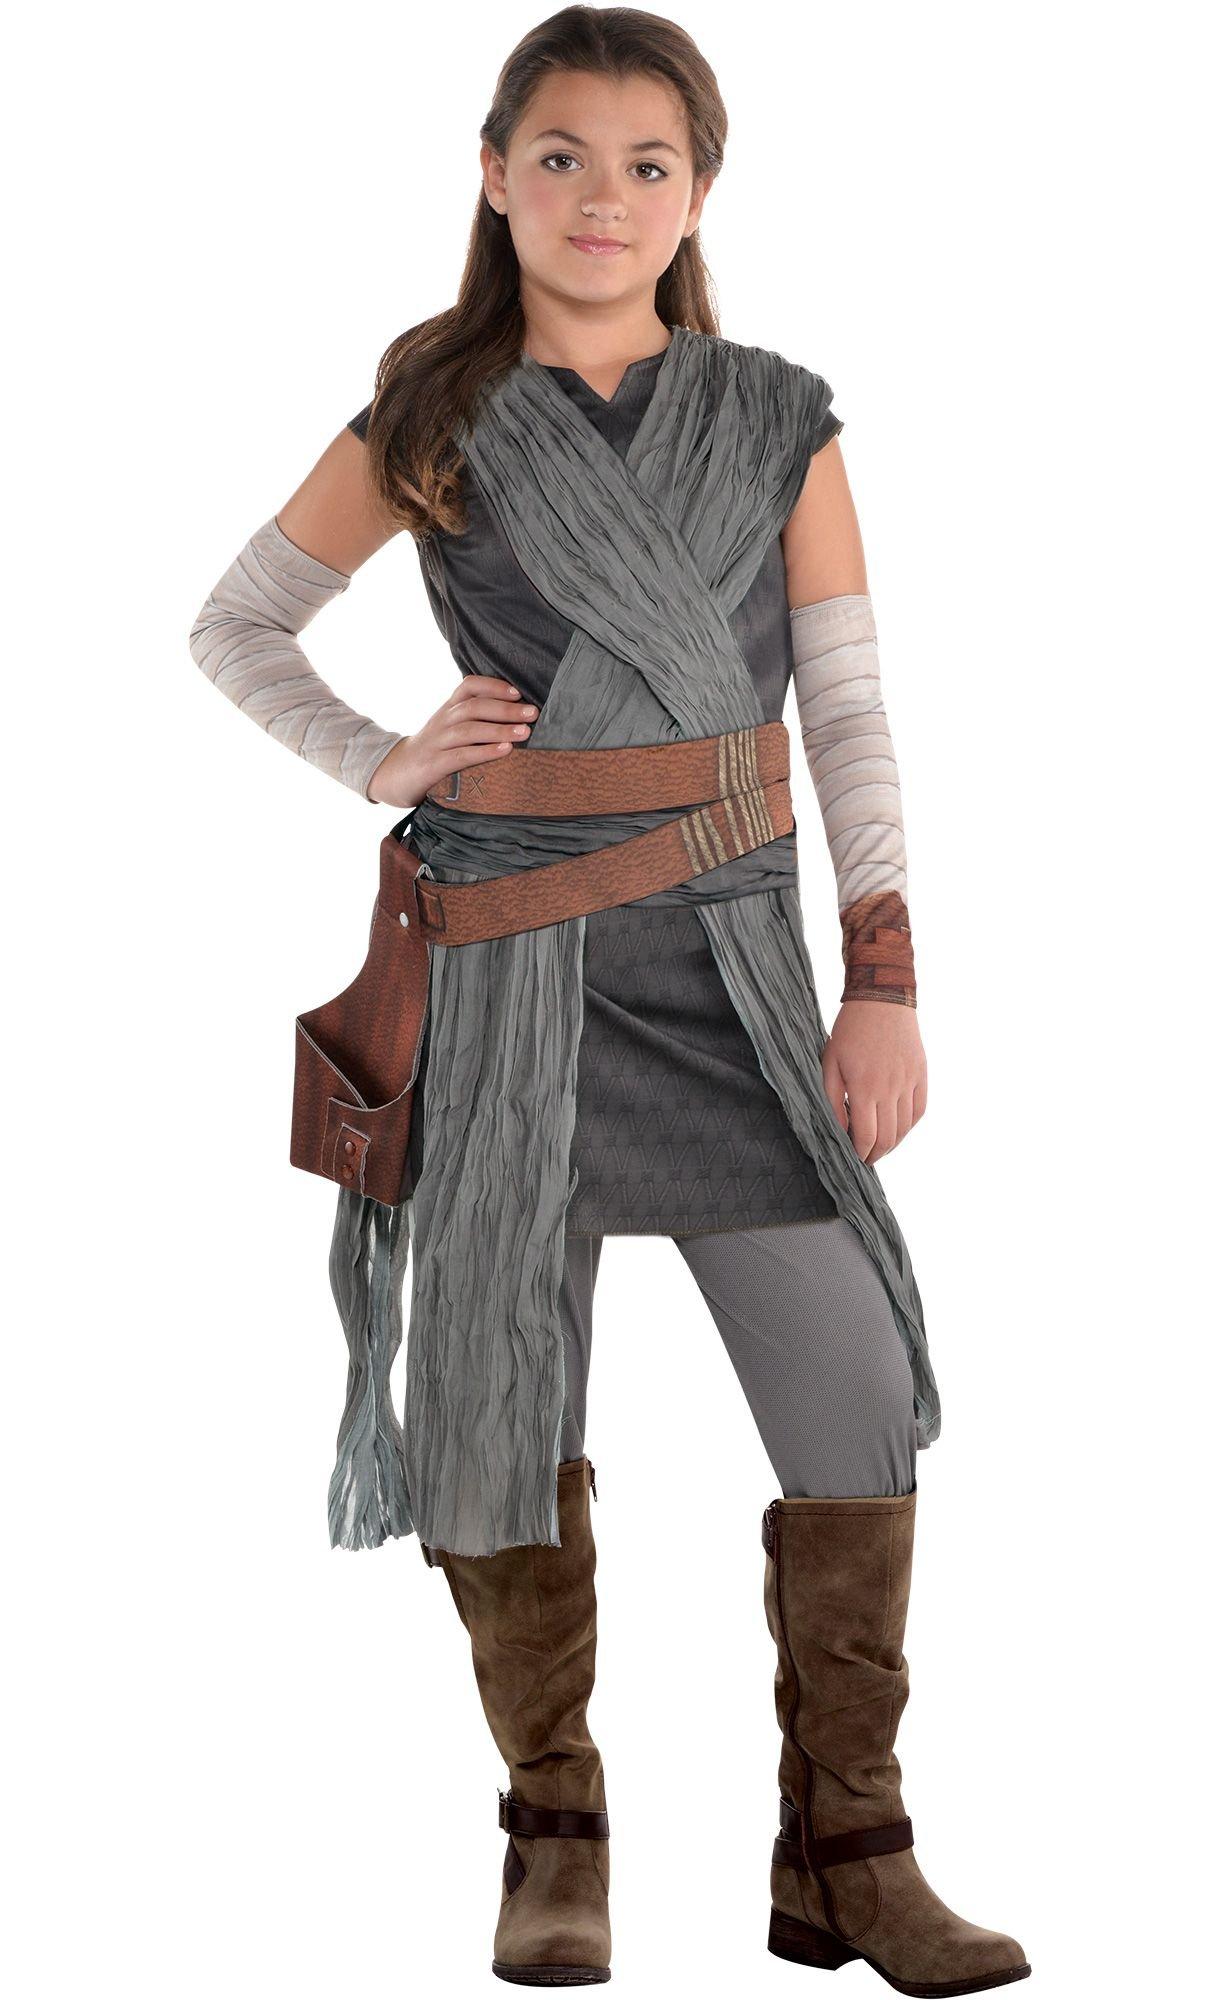 Ijsbeer Brandweerman theorie Girls Rey Costume - Star Wars 8 The Last Jedi | Party City